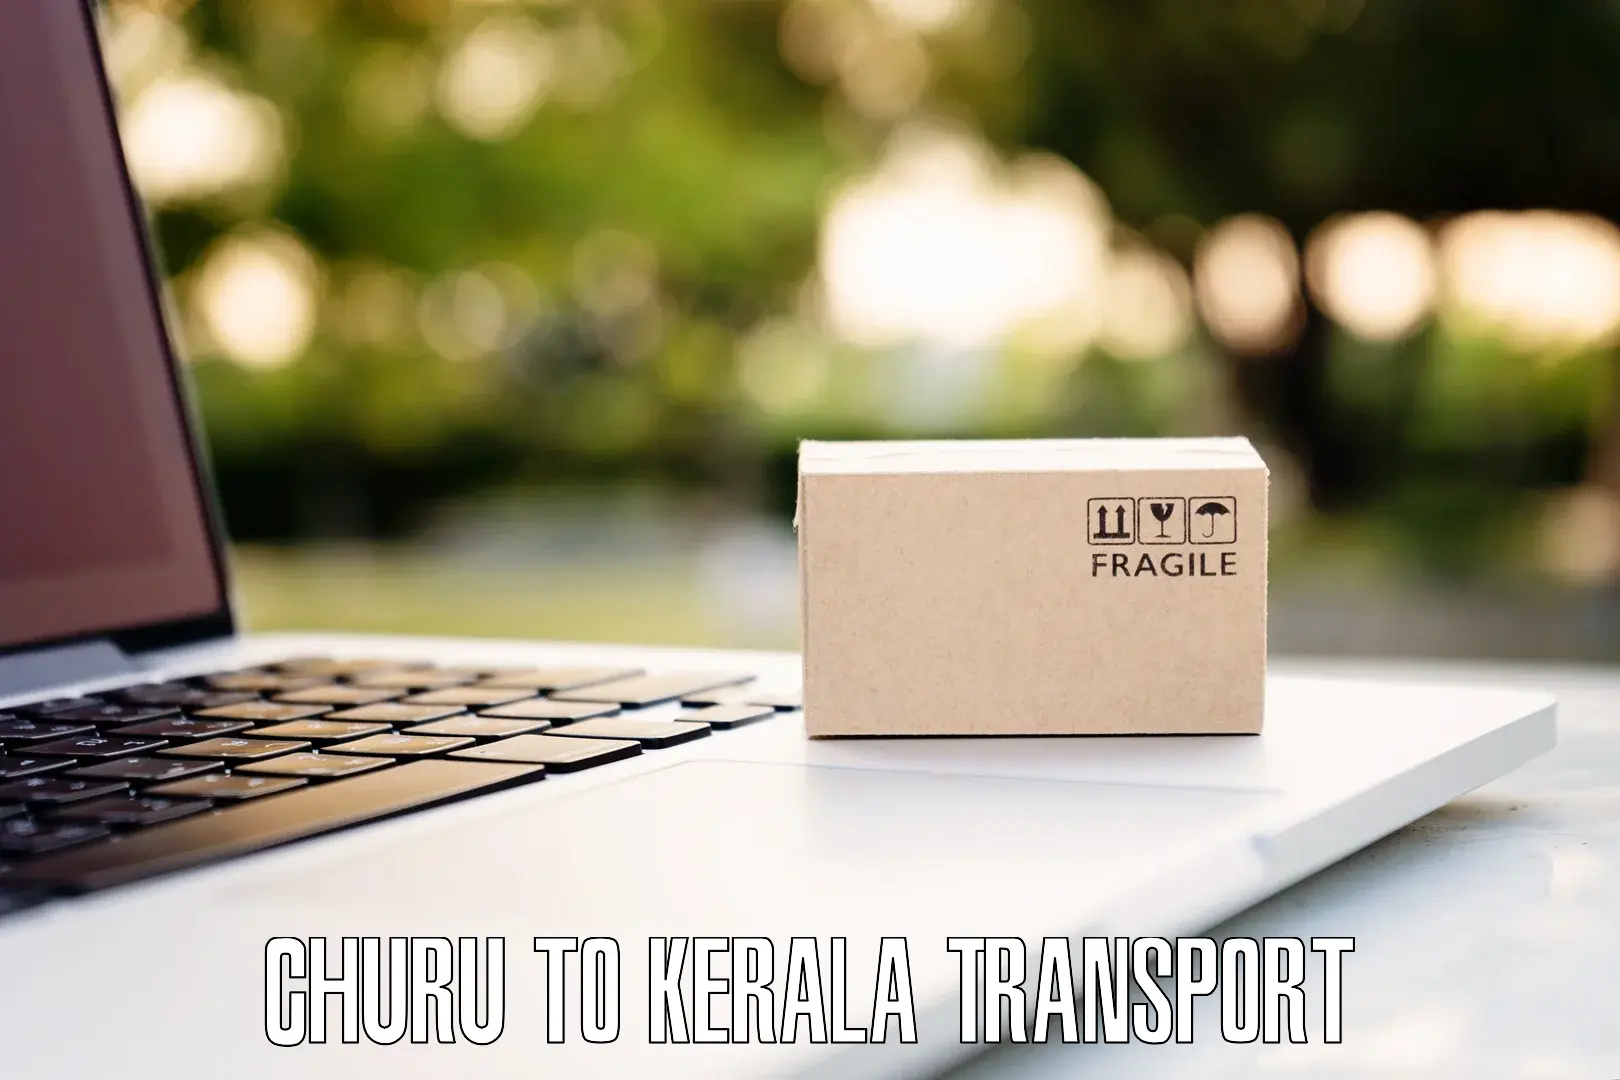 Bike transport service Churu to Thiruvananthapuram